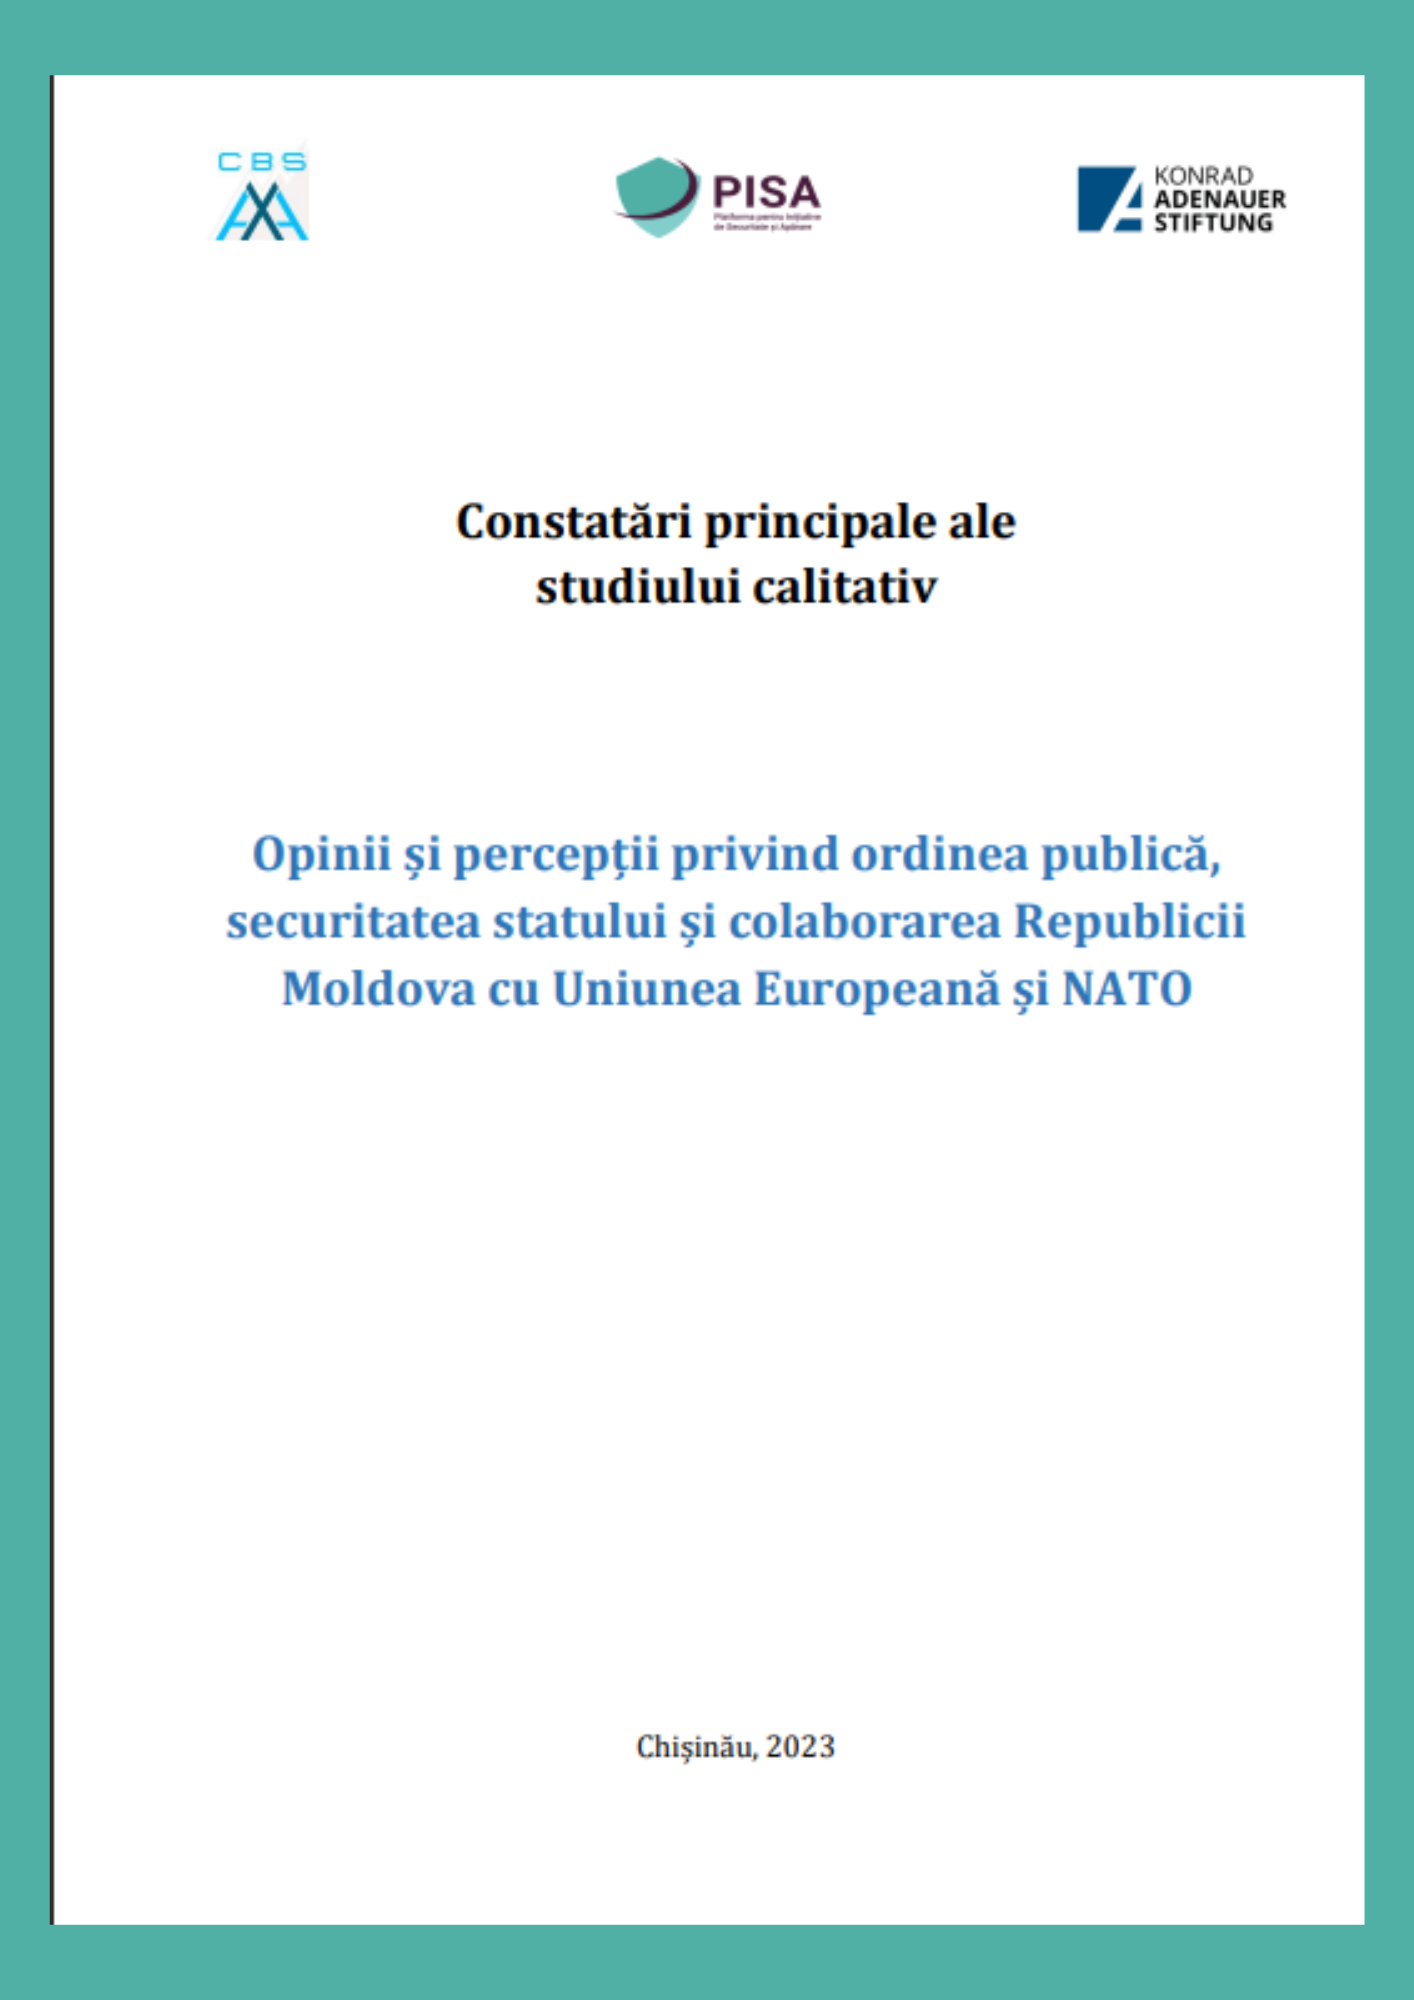 Constatări principale ale studiului calitativ - Opinii și percepții privind ordinea publică, securitatea statului și colaborarea Republicii Moldova cu Uniunea Europeană și NATO